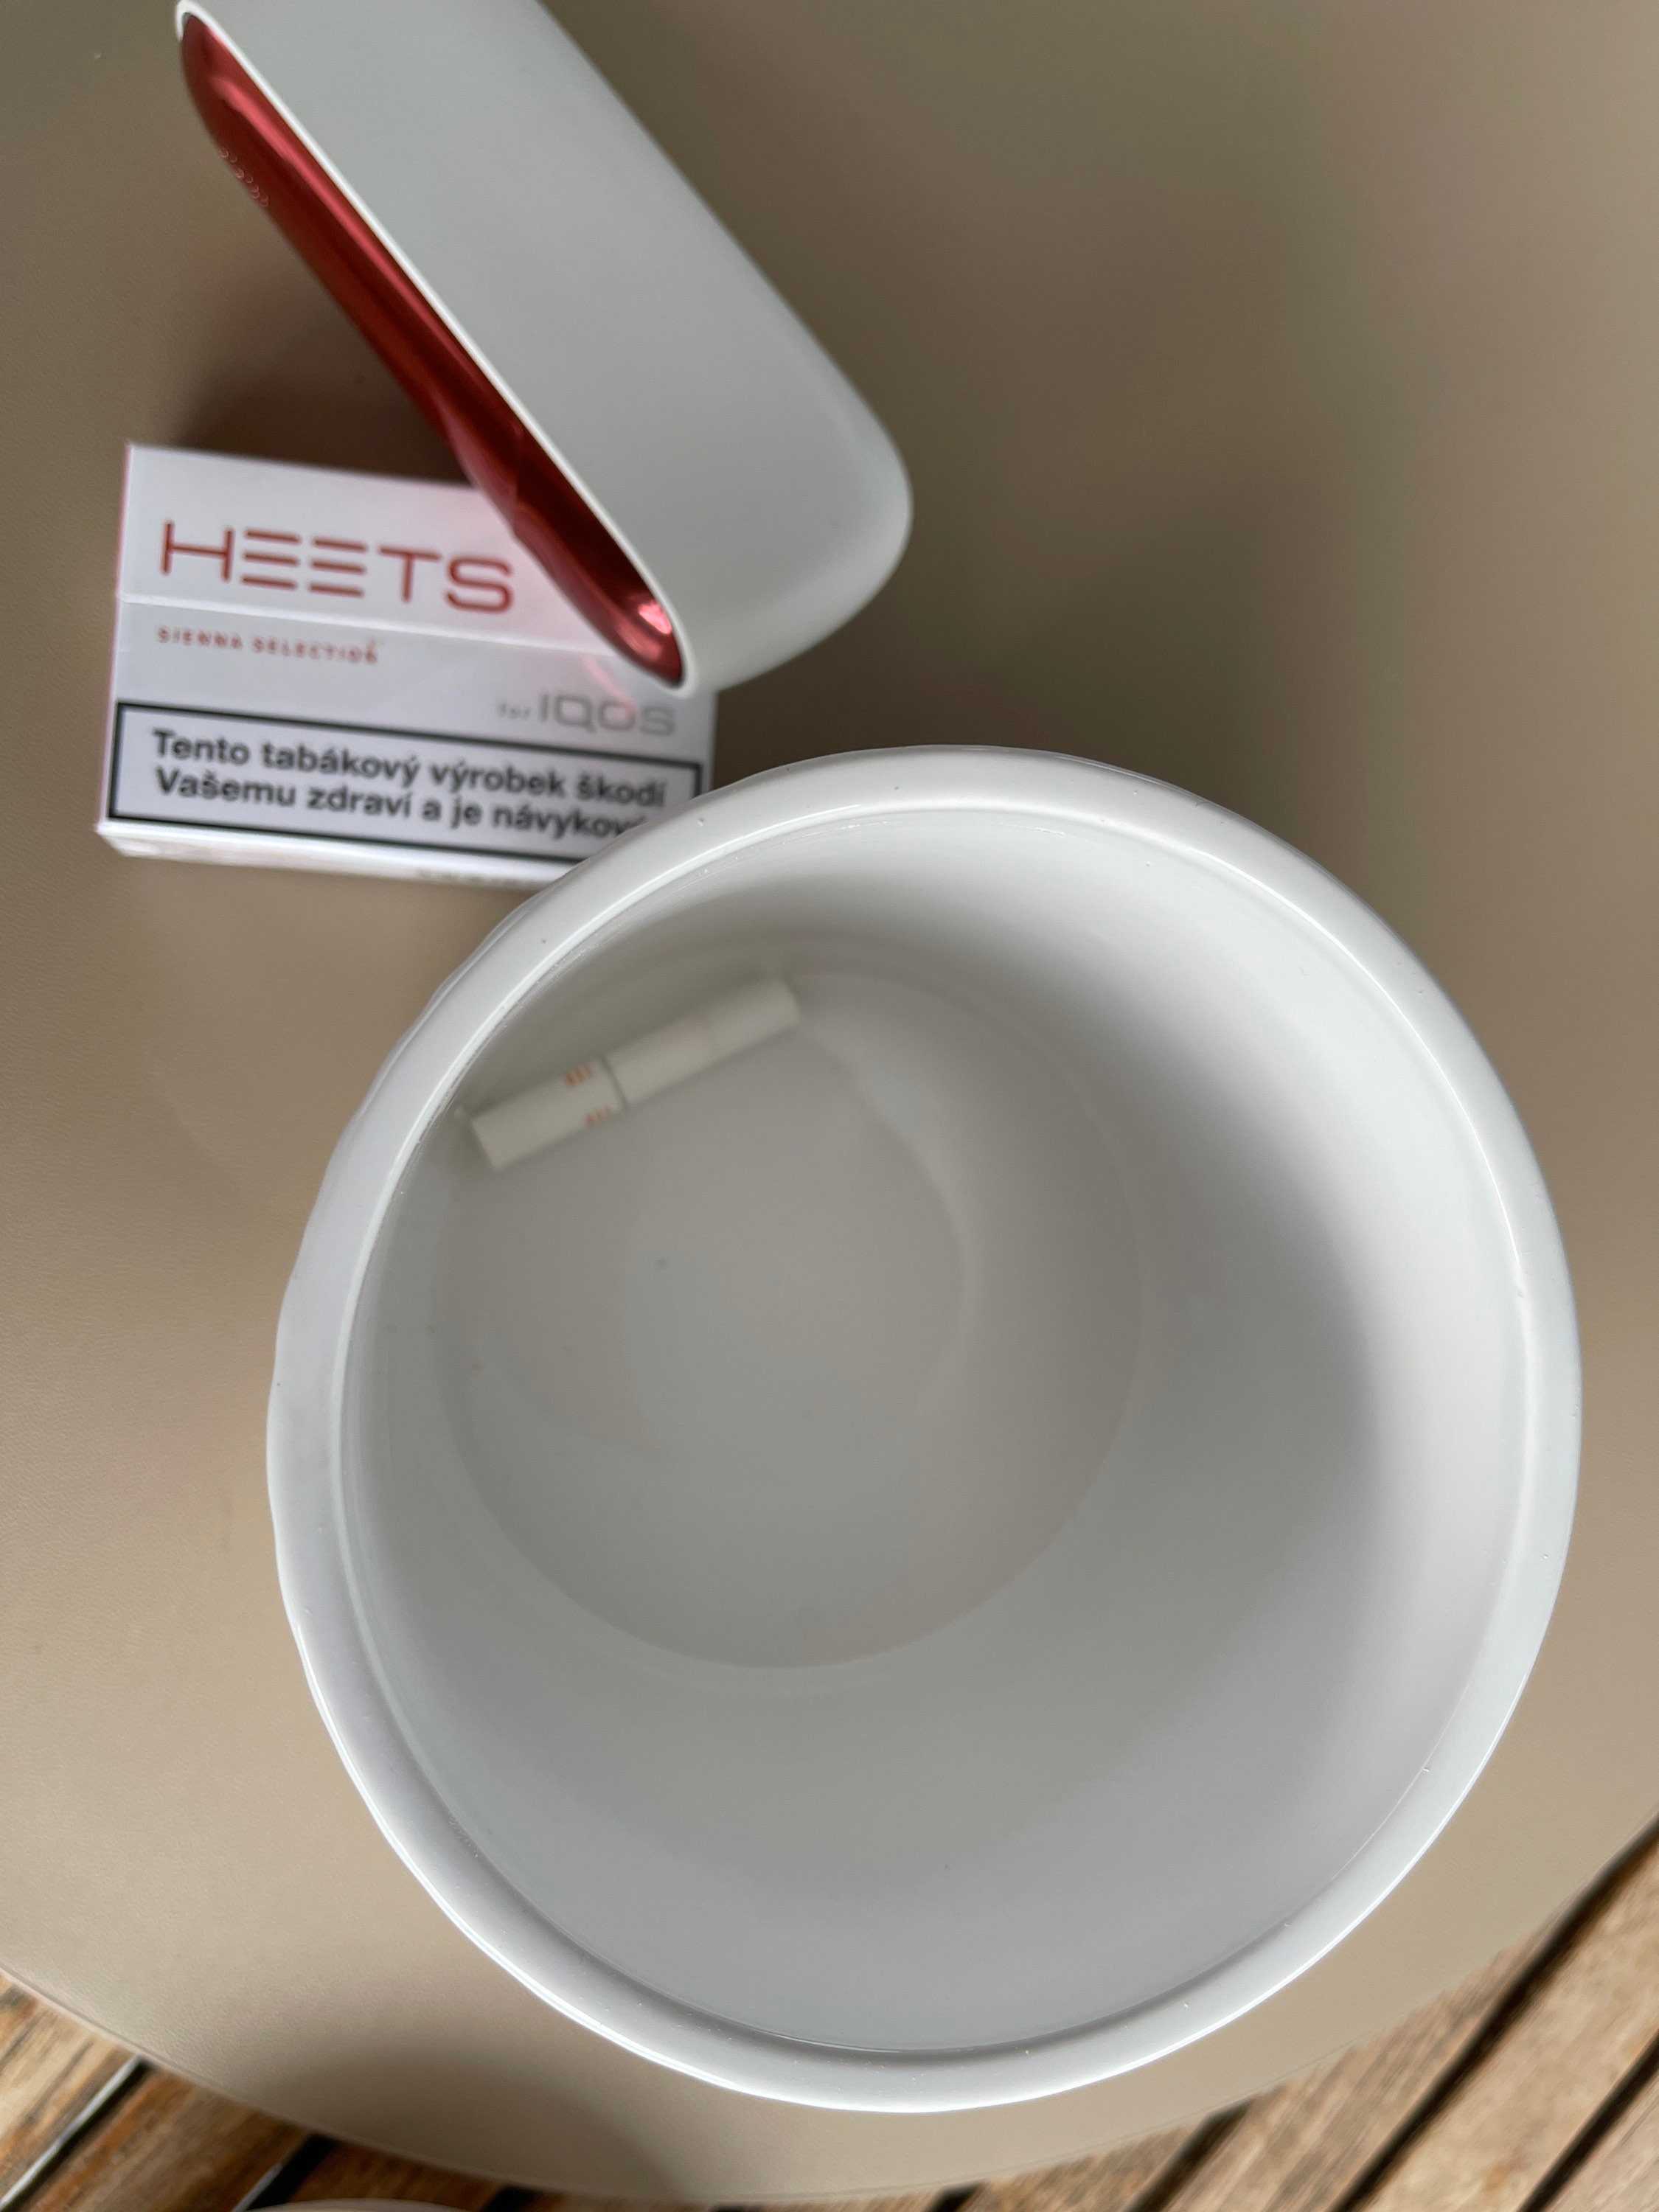 Nine-sided Heets ashtray